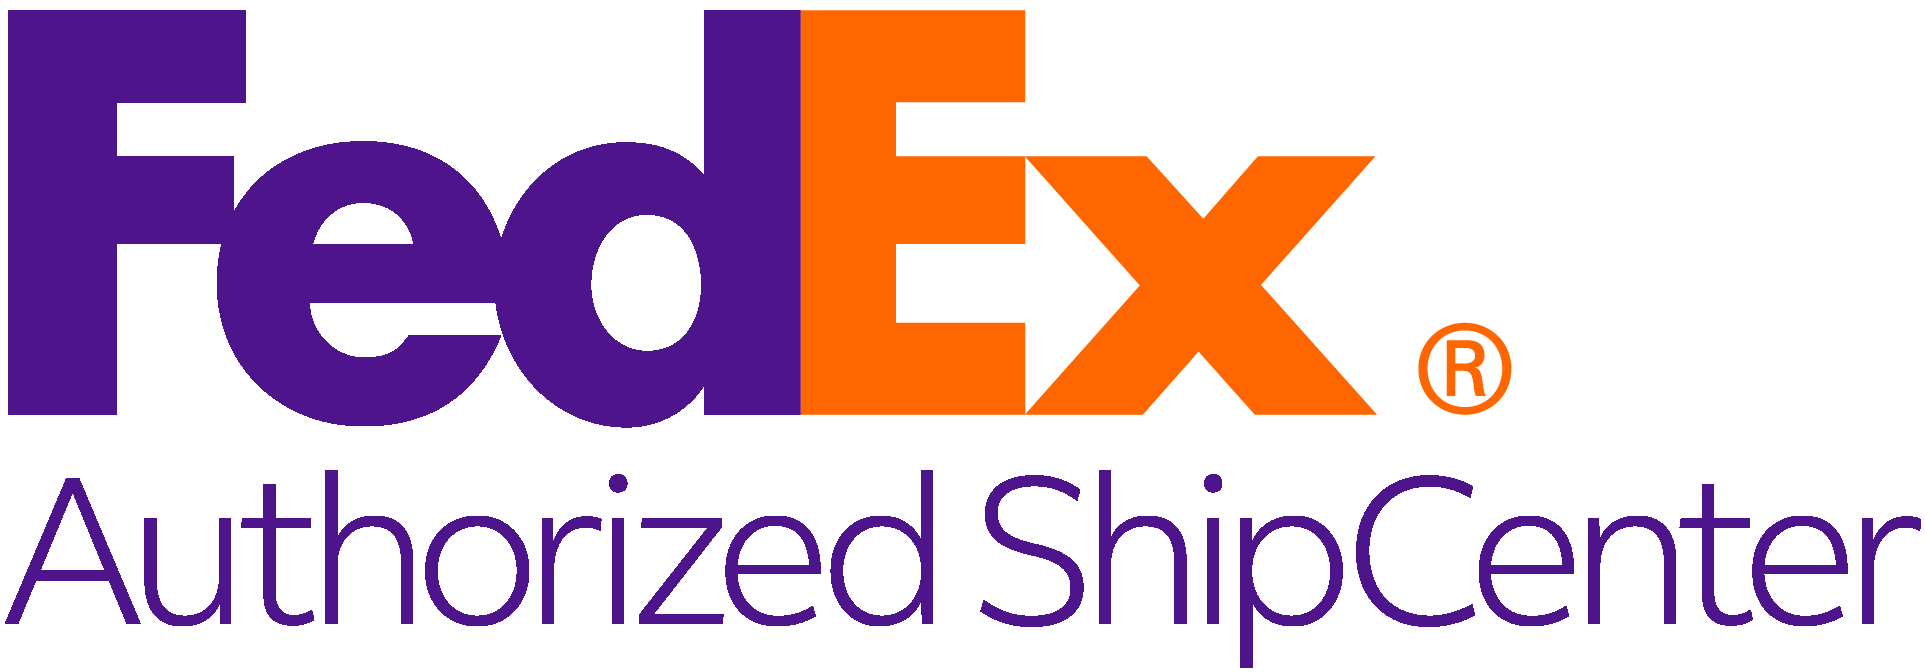 FedEx Authorized Ship Center Logo